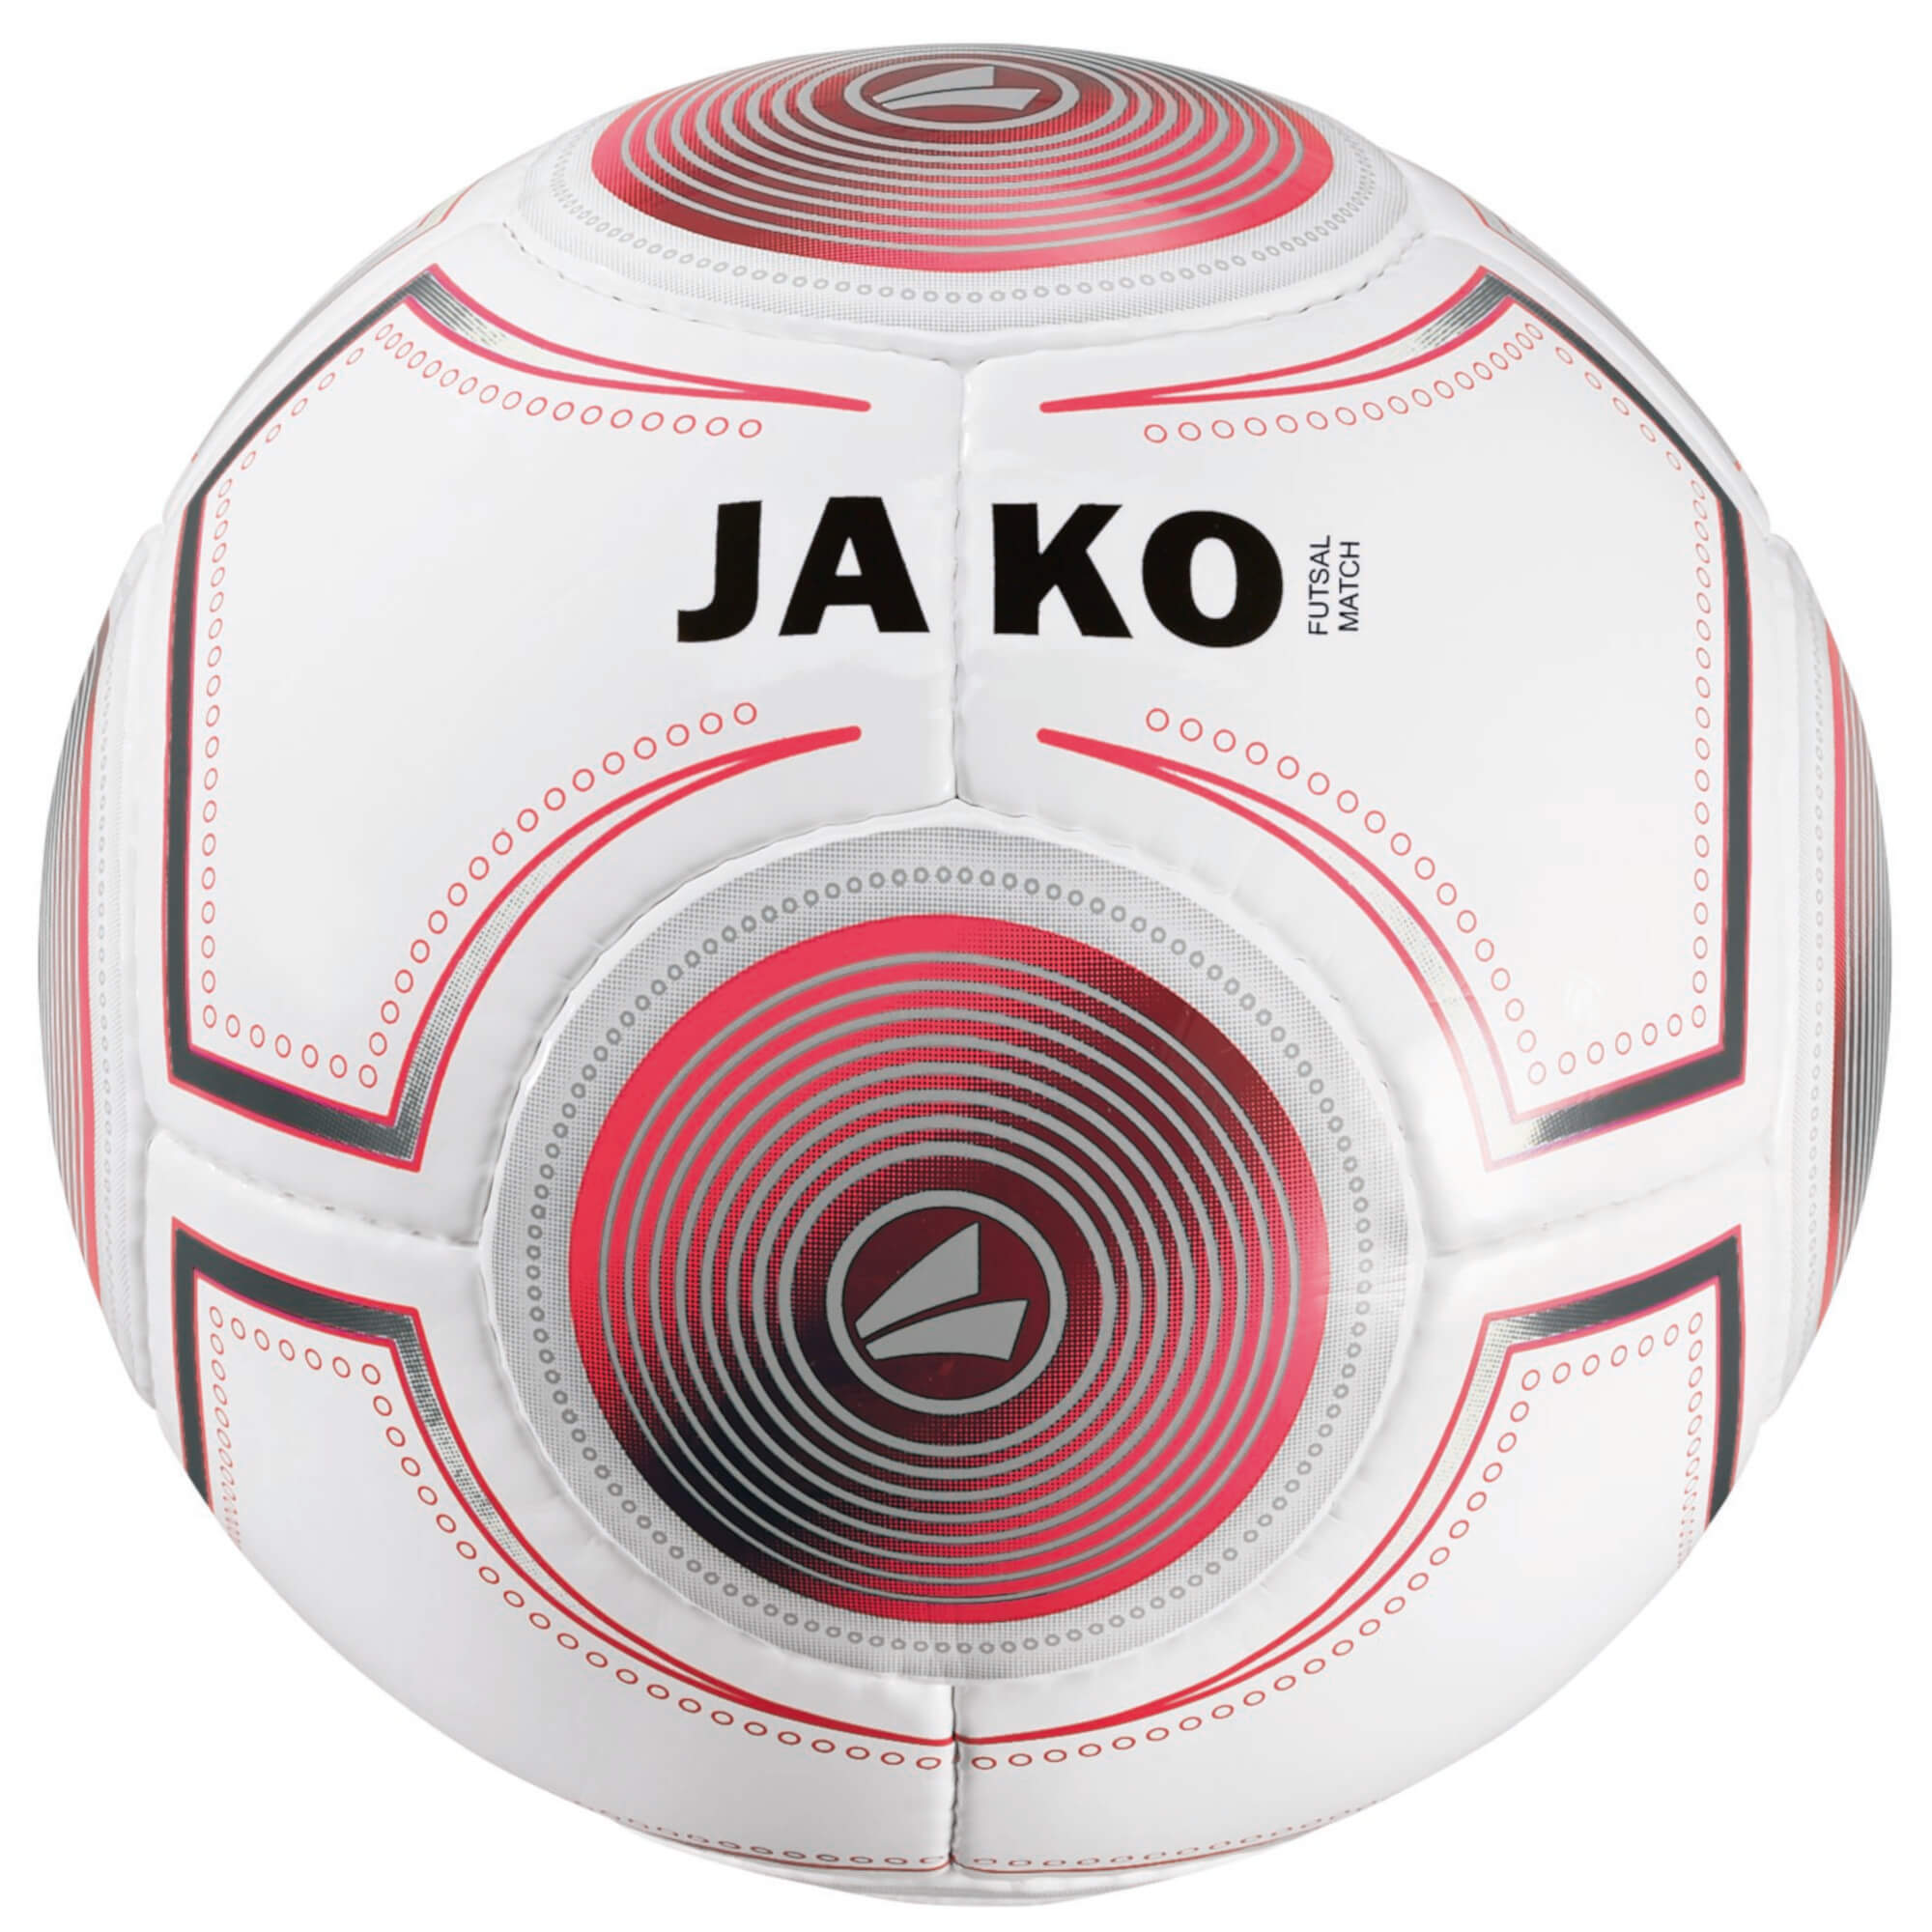 JAKO Spielball Futsal 2334, Größe 4